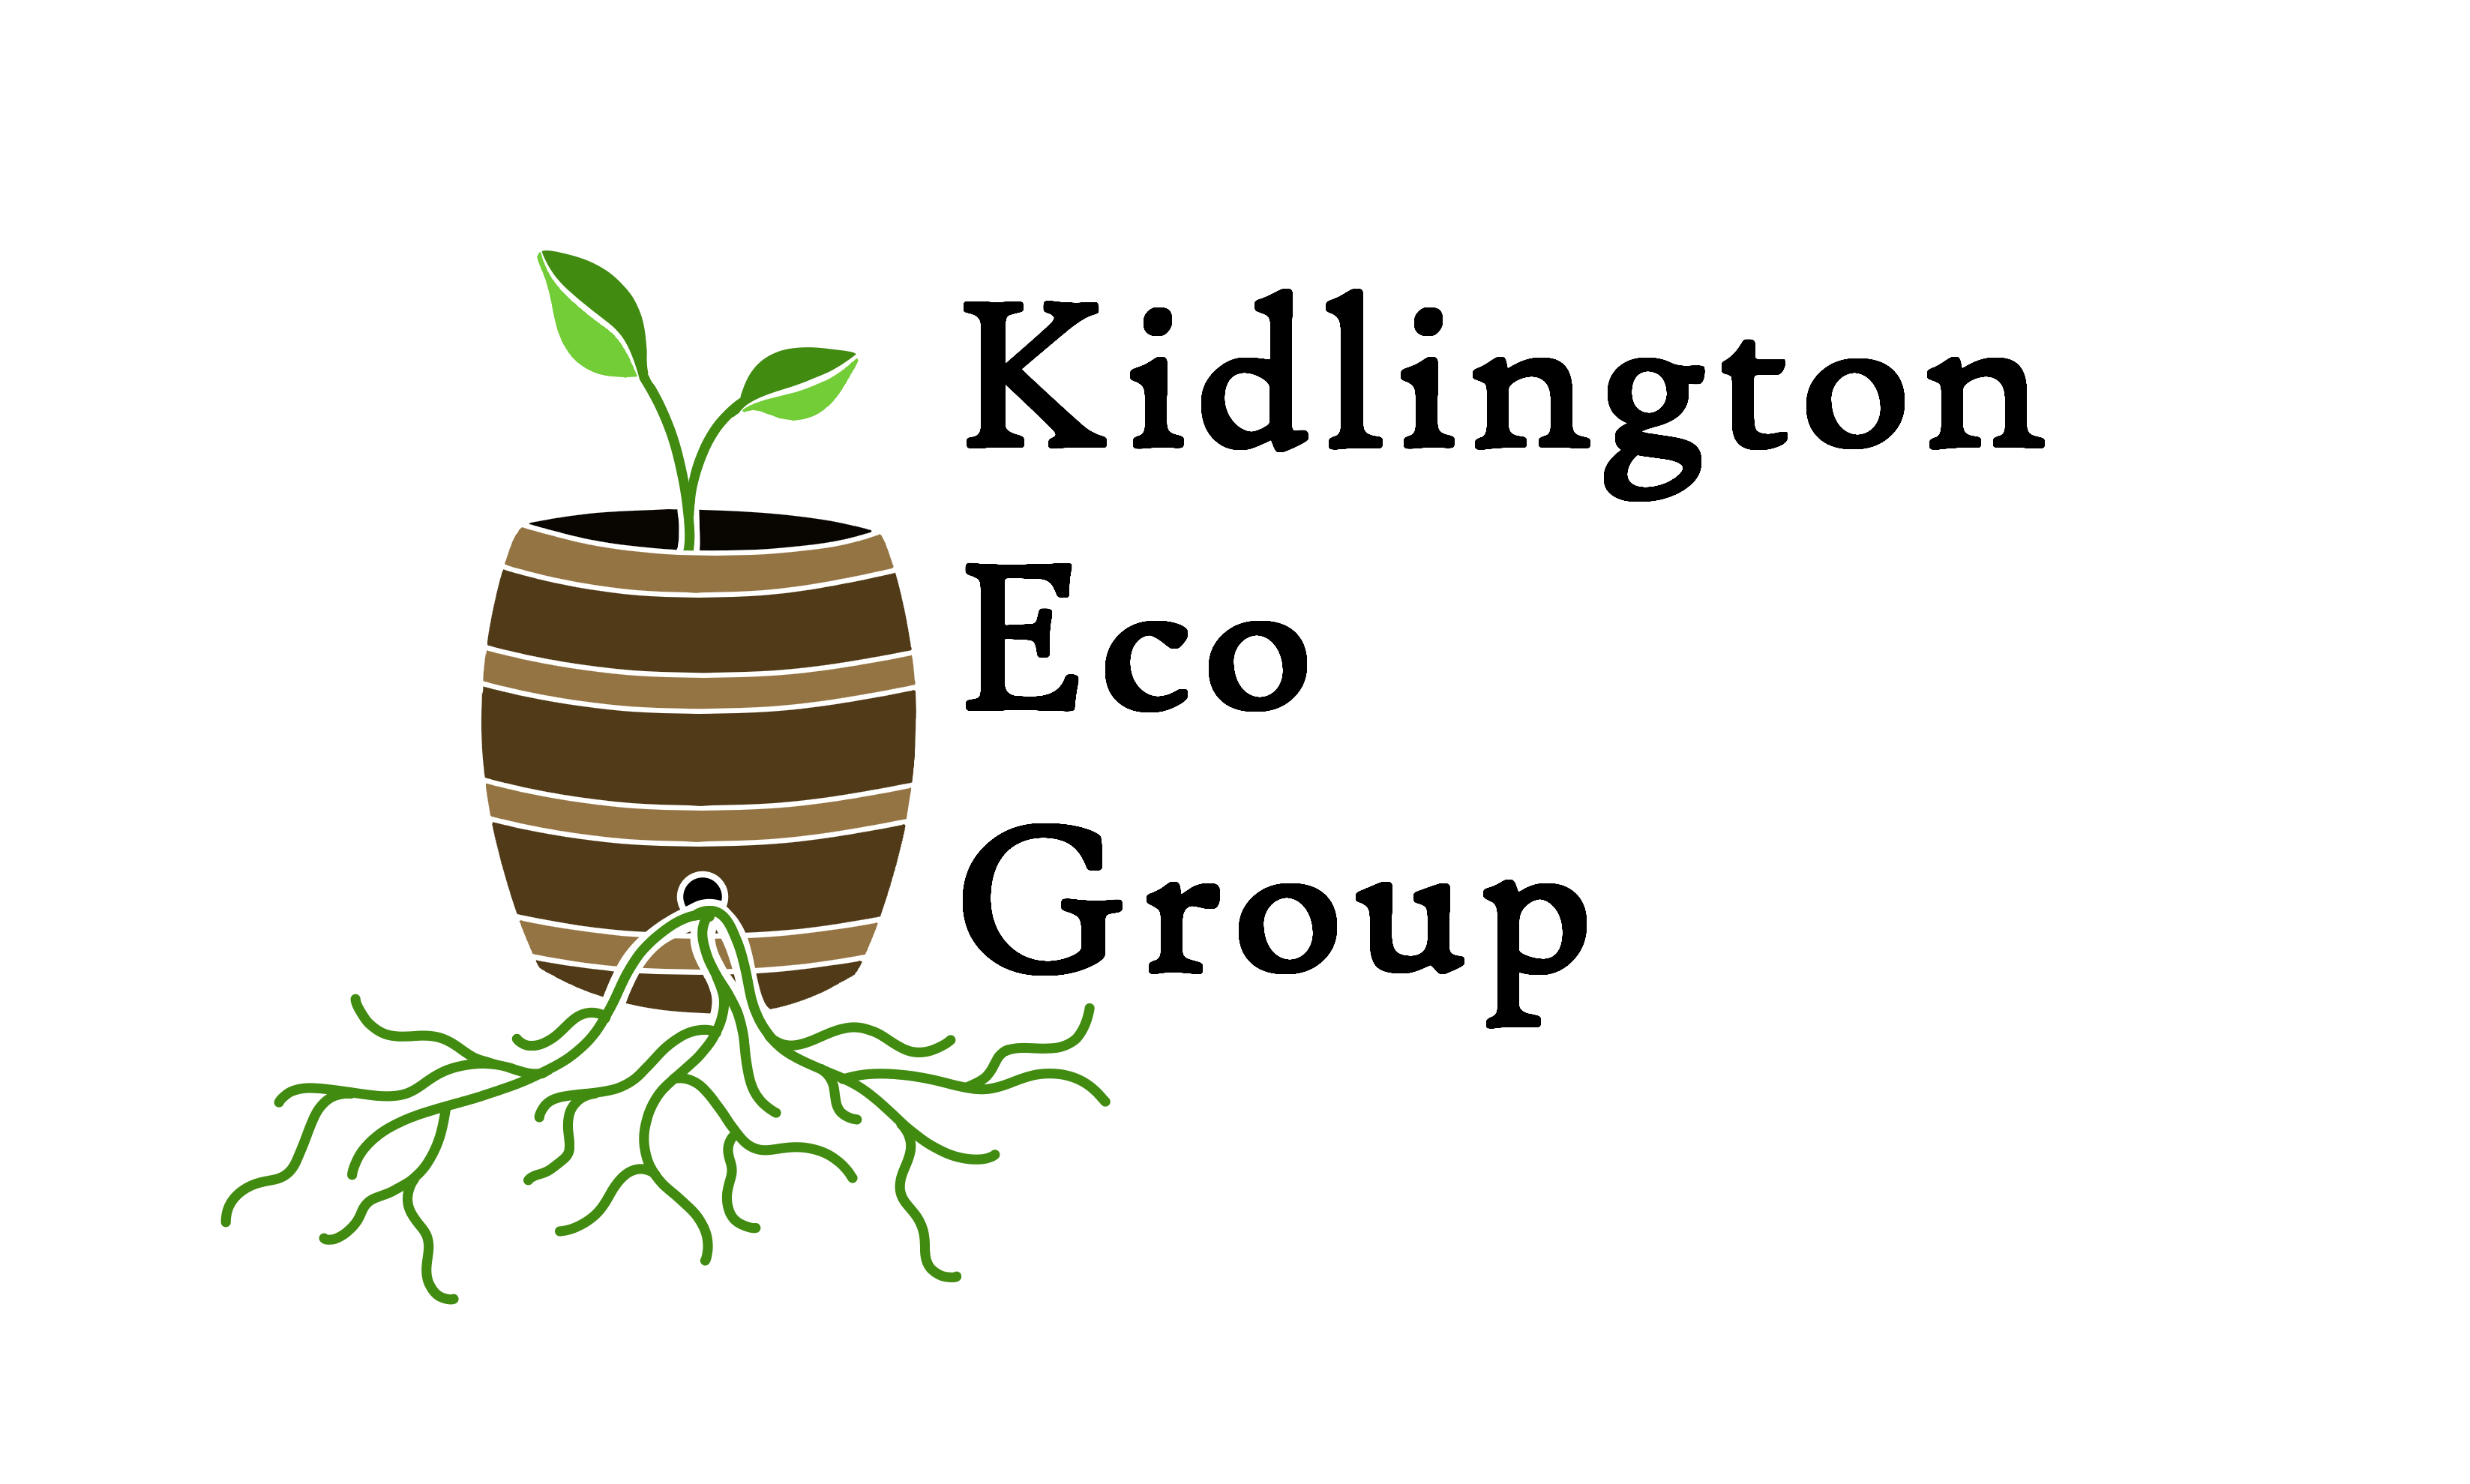 Kidlington Eco Group